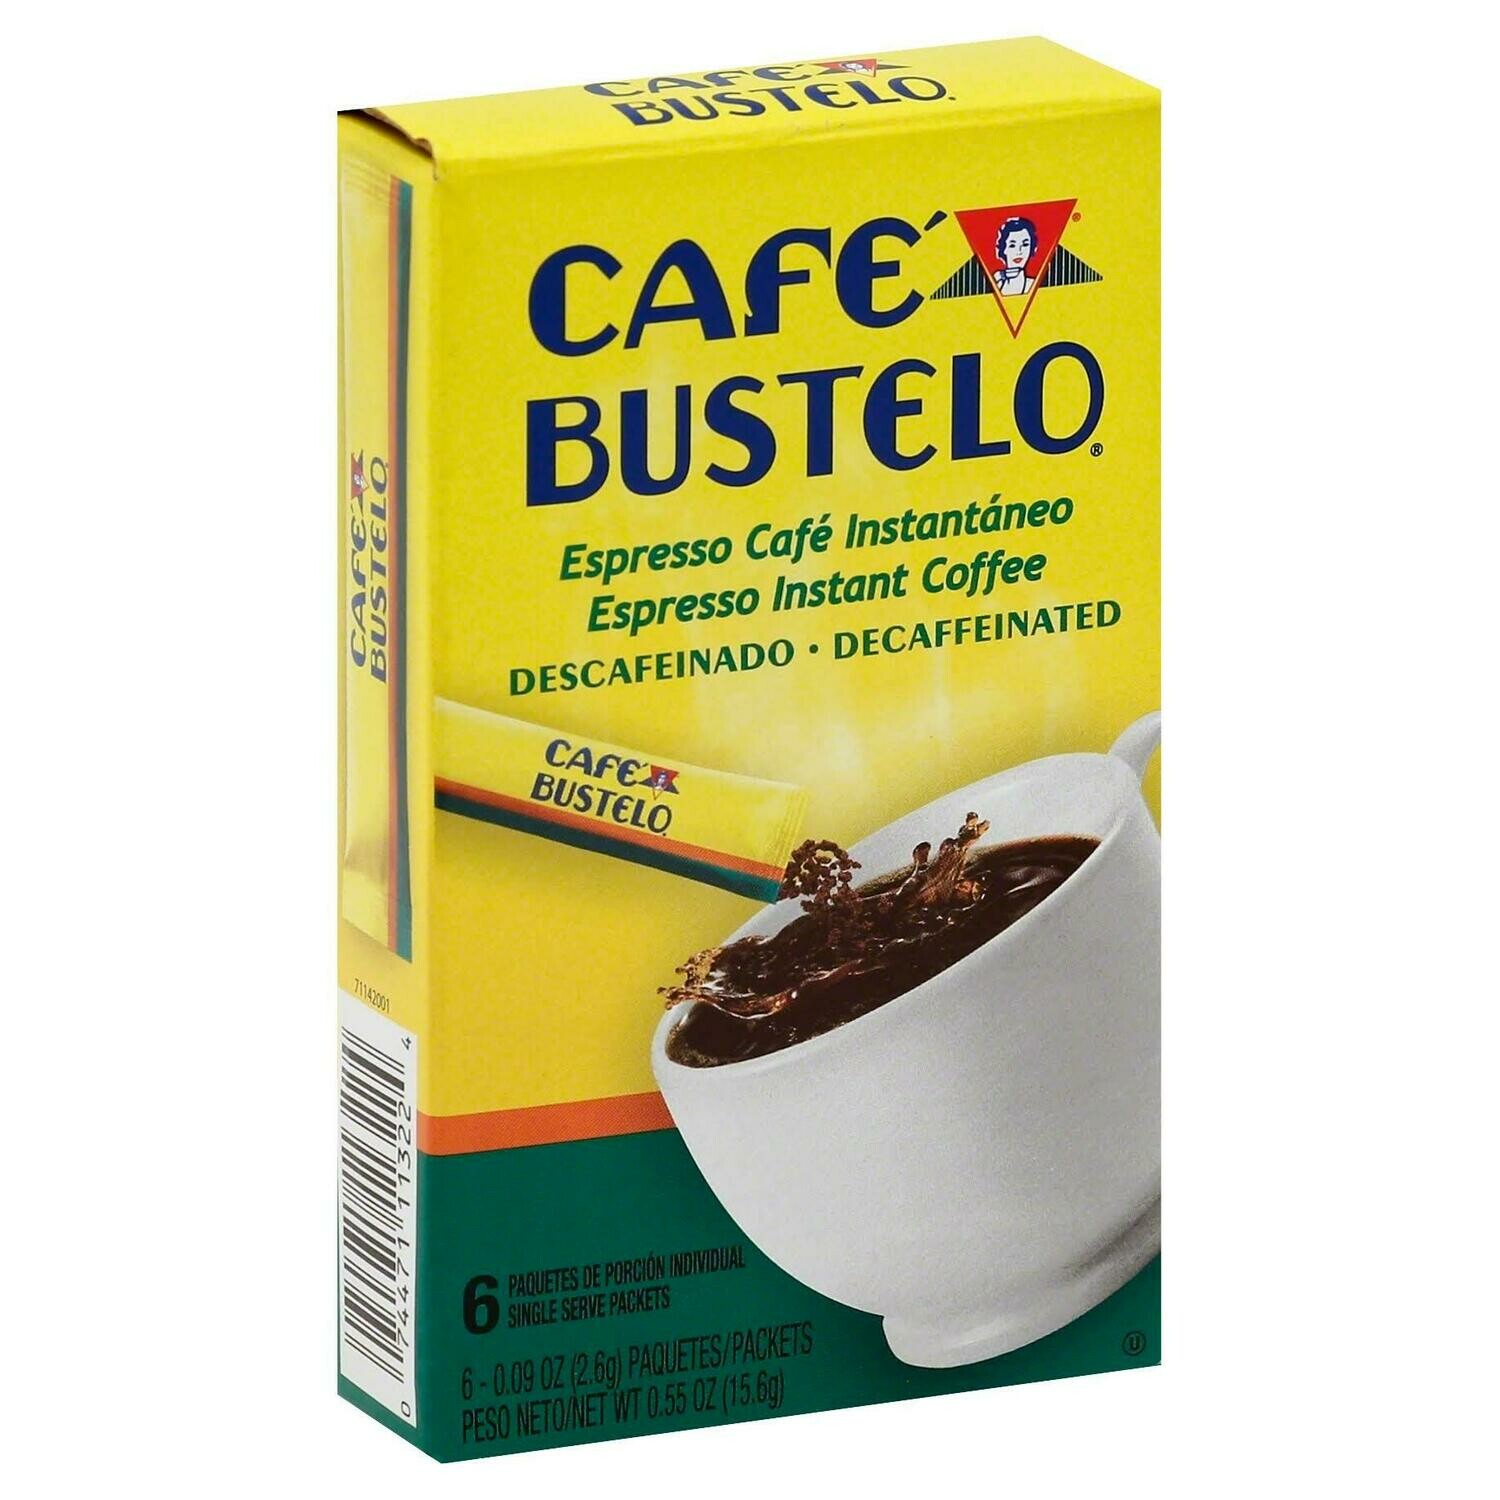 Café Bustelo Instant Coffee sticks - Decaf 6ct